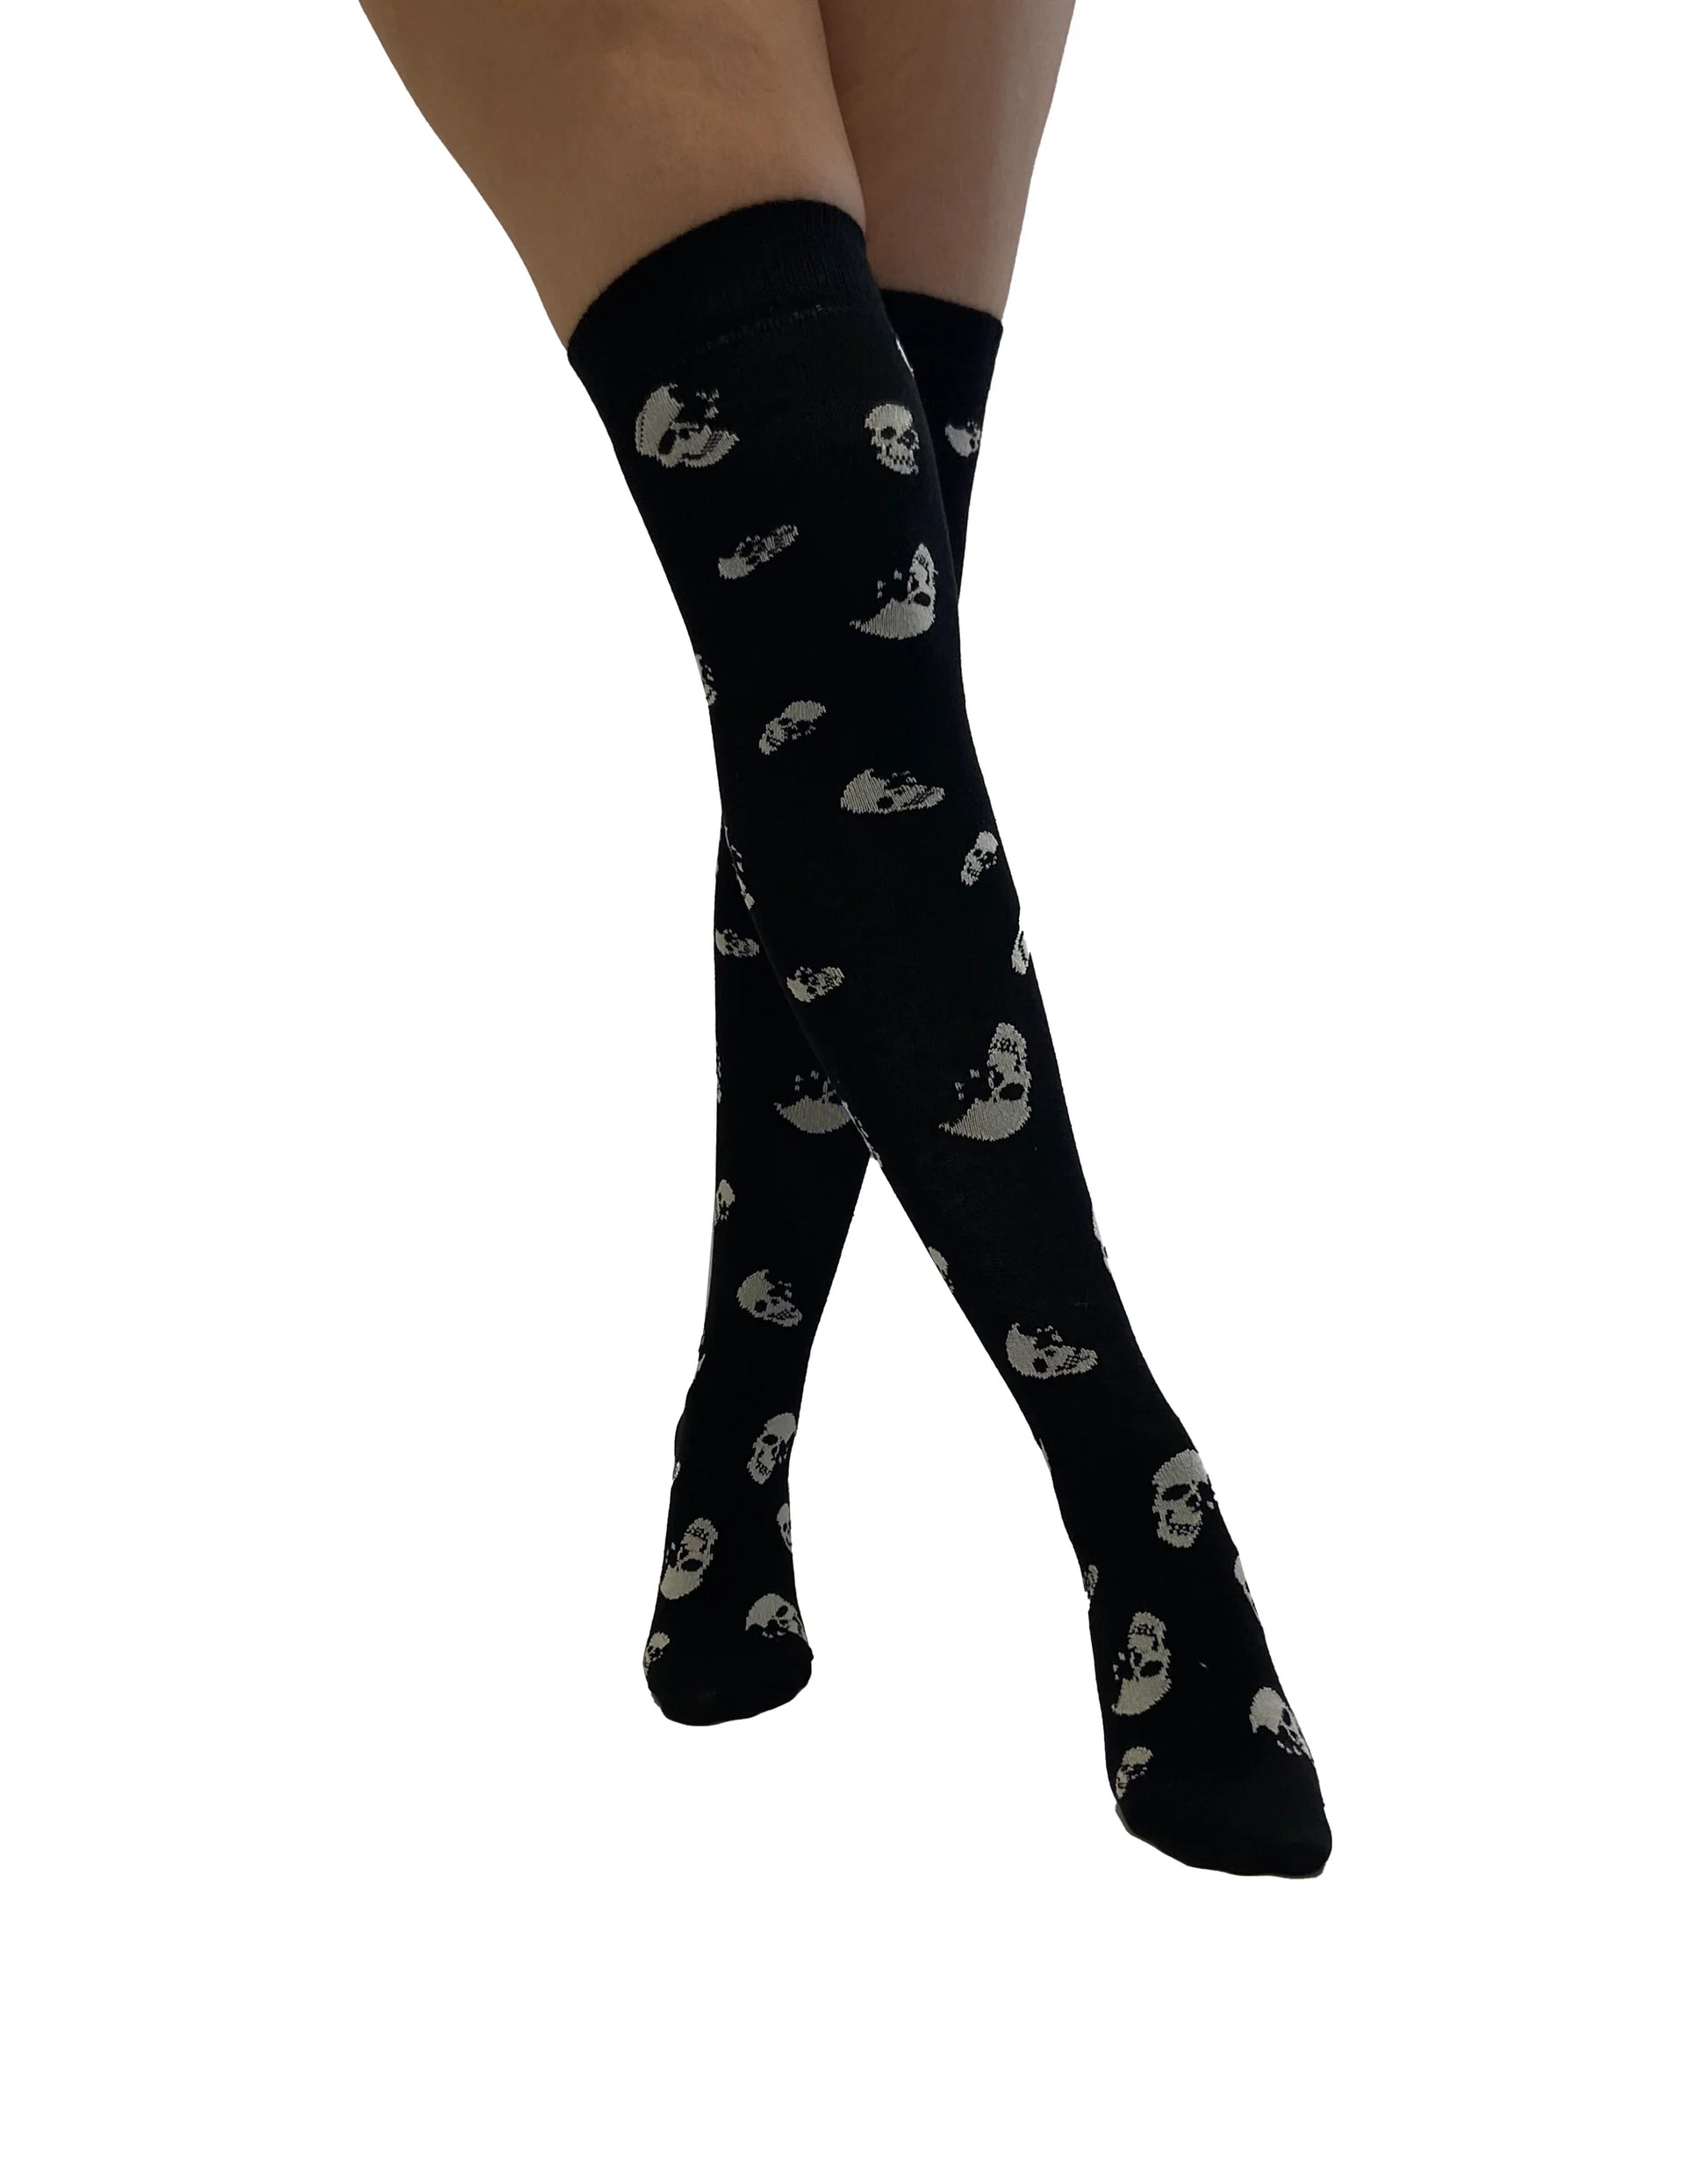 Pamela Mann Skull Over-Knee Socks - Black cotton mix over the knee long socks with a white all over skull pattern. Perfect for Halloween